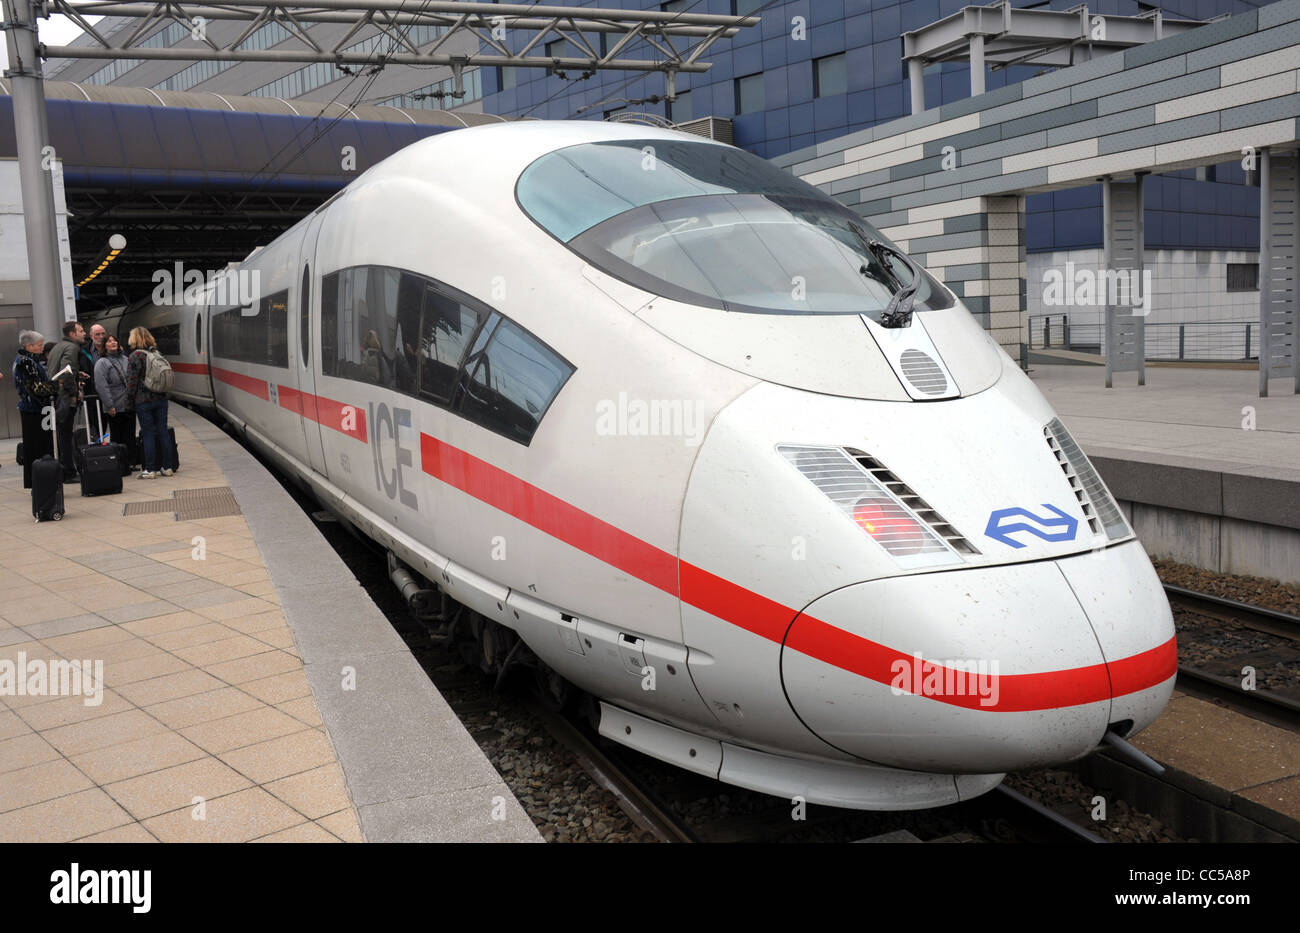 ICE train, German railways (Deutsche Bahn) ICE train Stock Photo